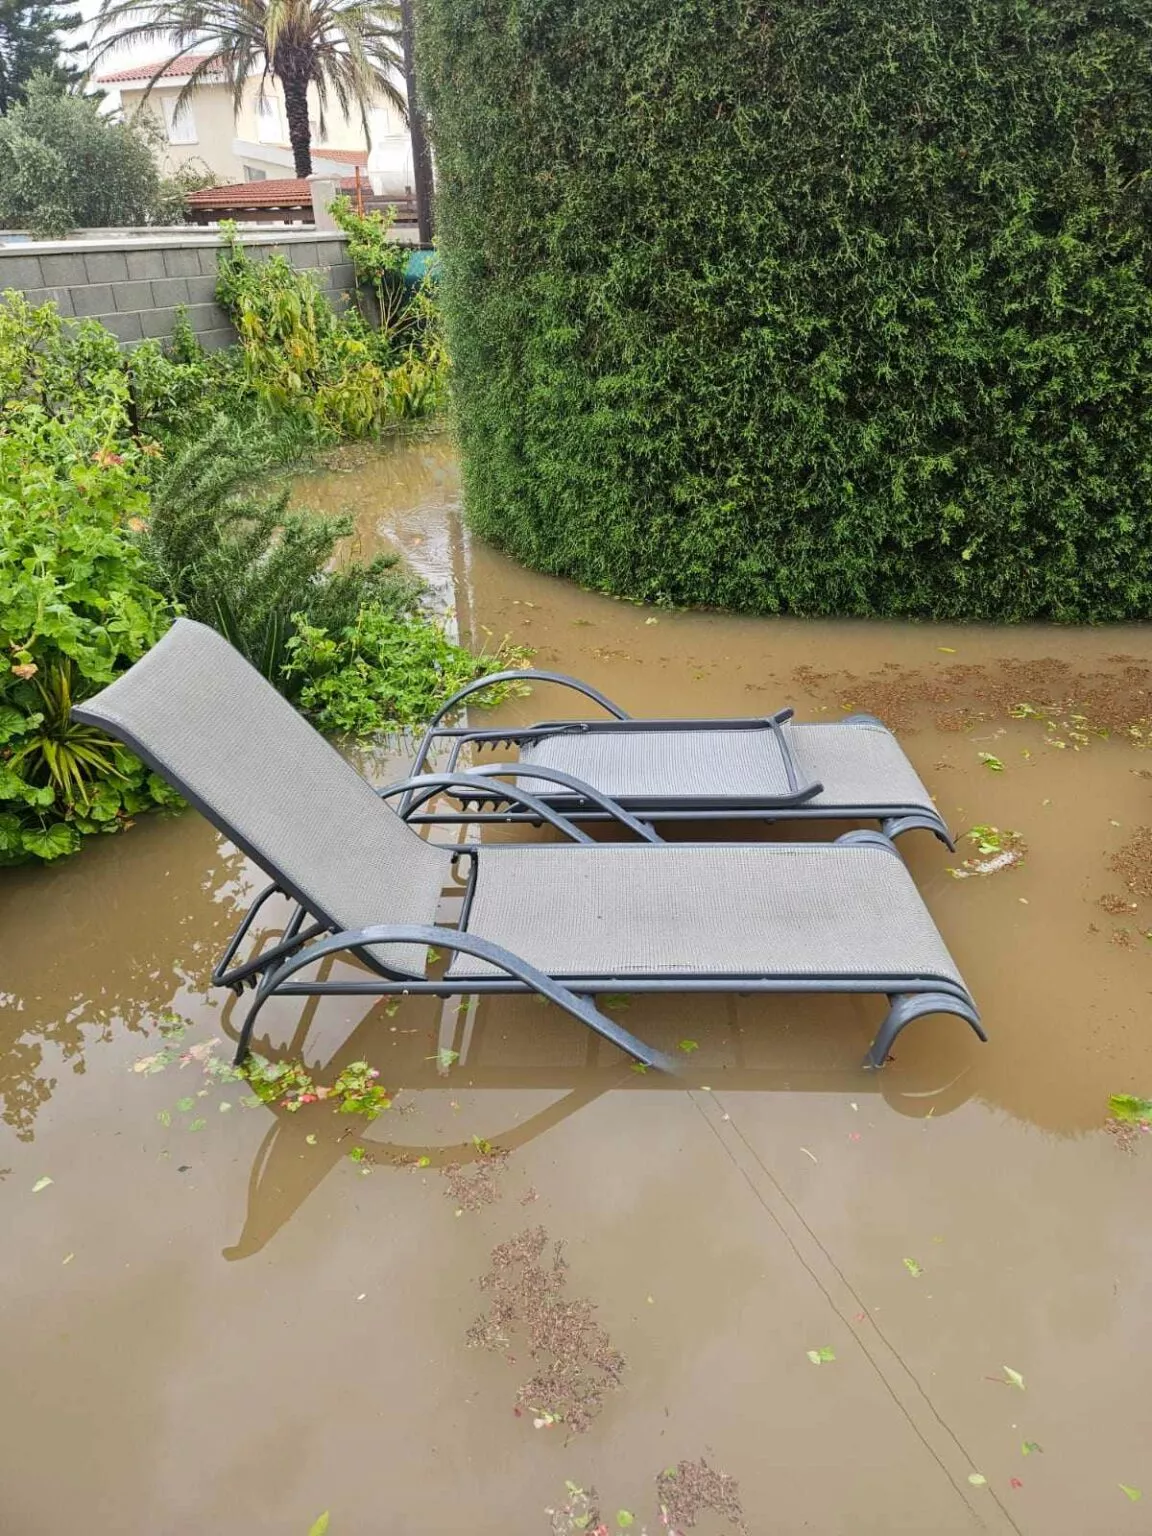 Δρόμοι ποτάμια και πλημμυρισμένα σπίτια στην επαρχία Λάρνακας – «Έπεσαν πολύ μεγάλες ποσότητες νερού» (εικόνες)